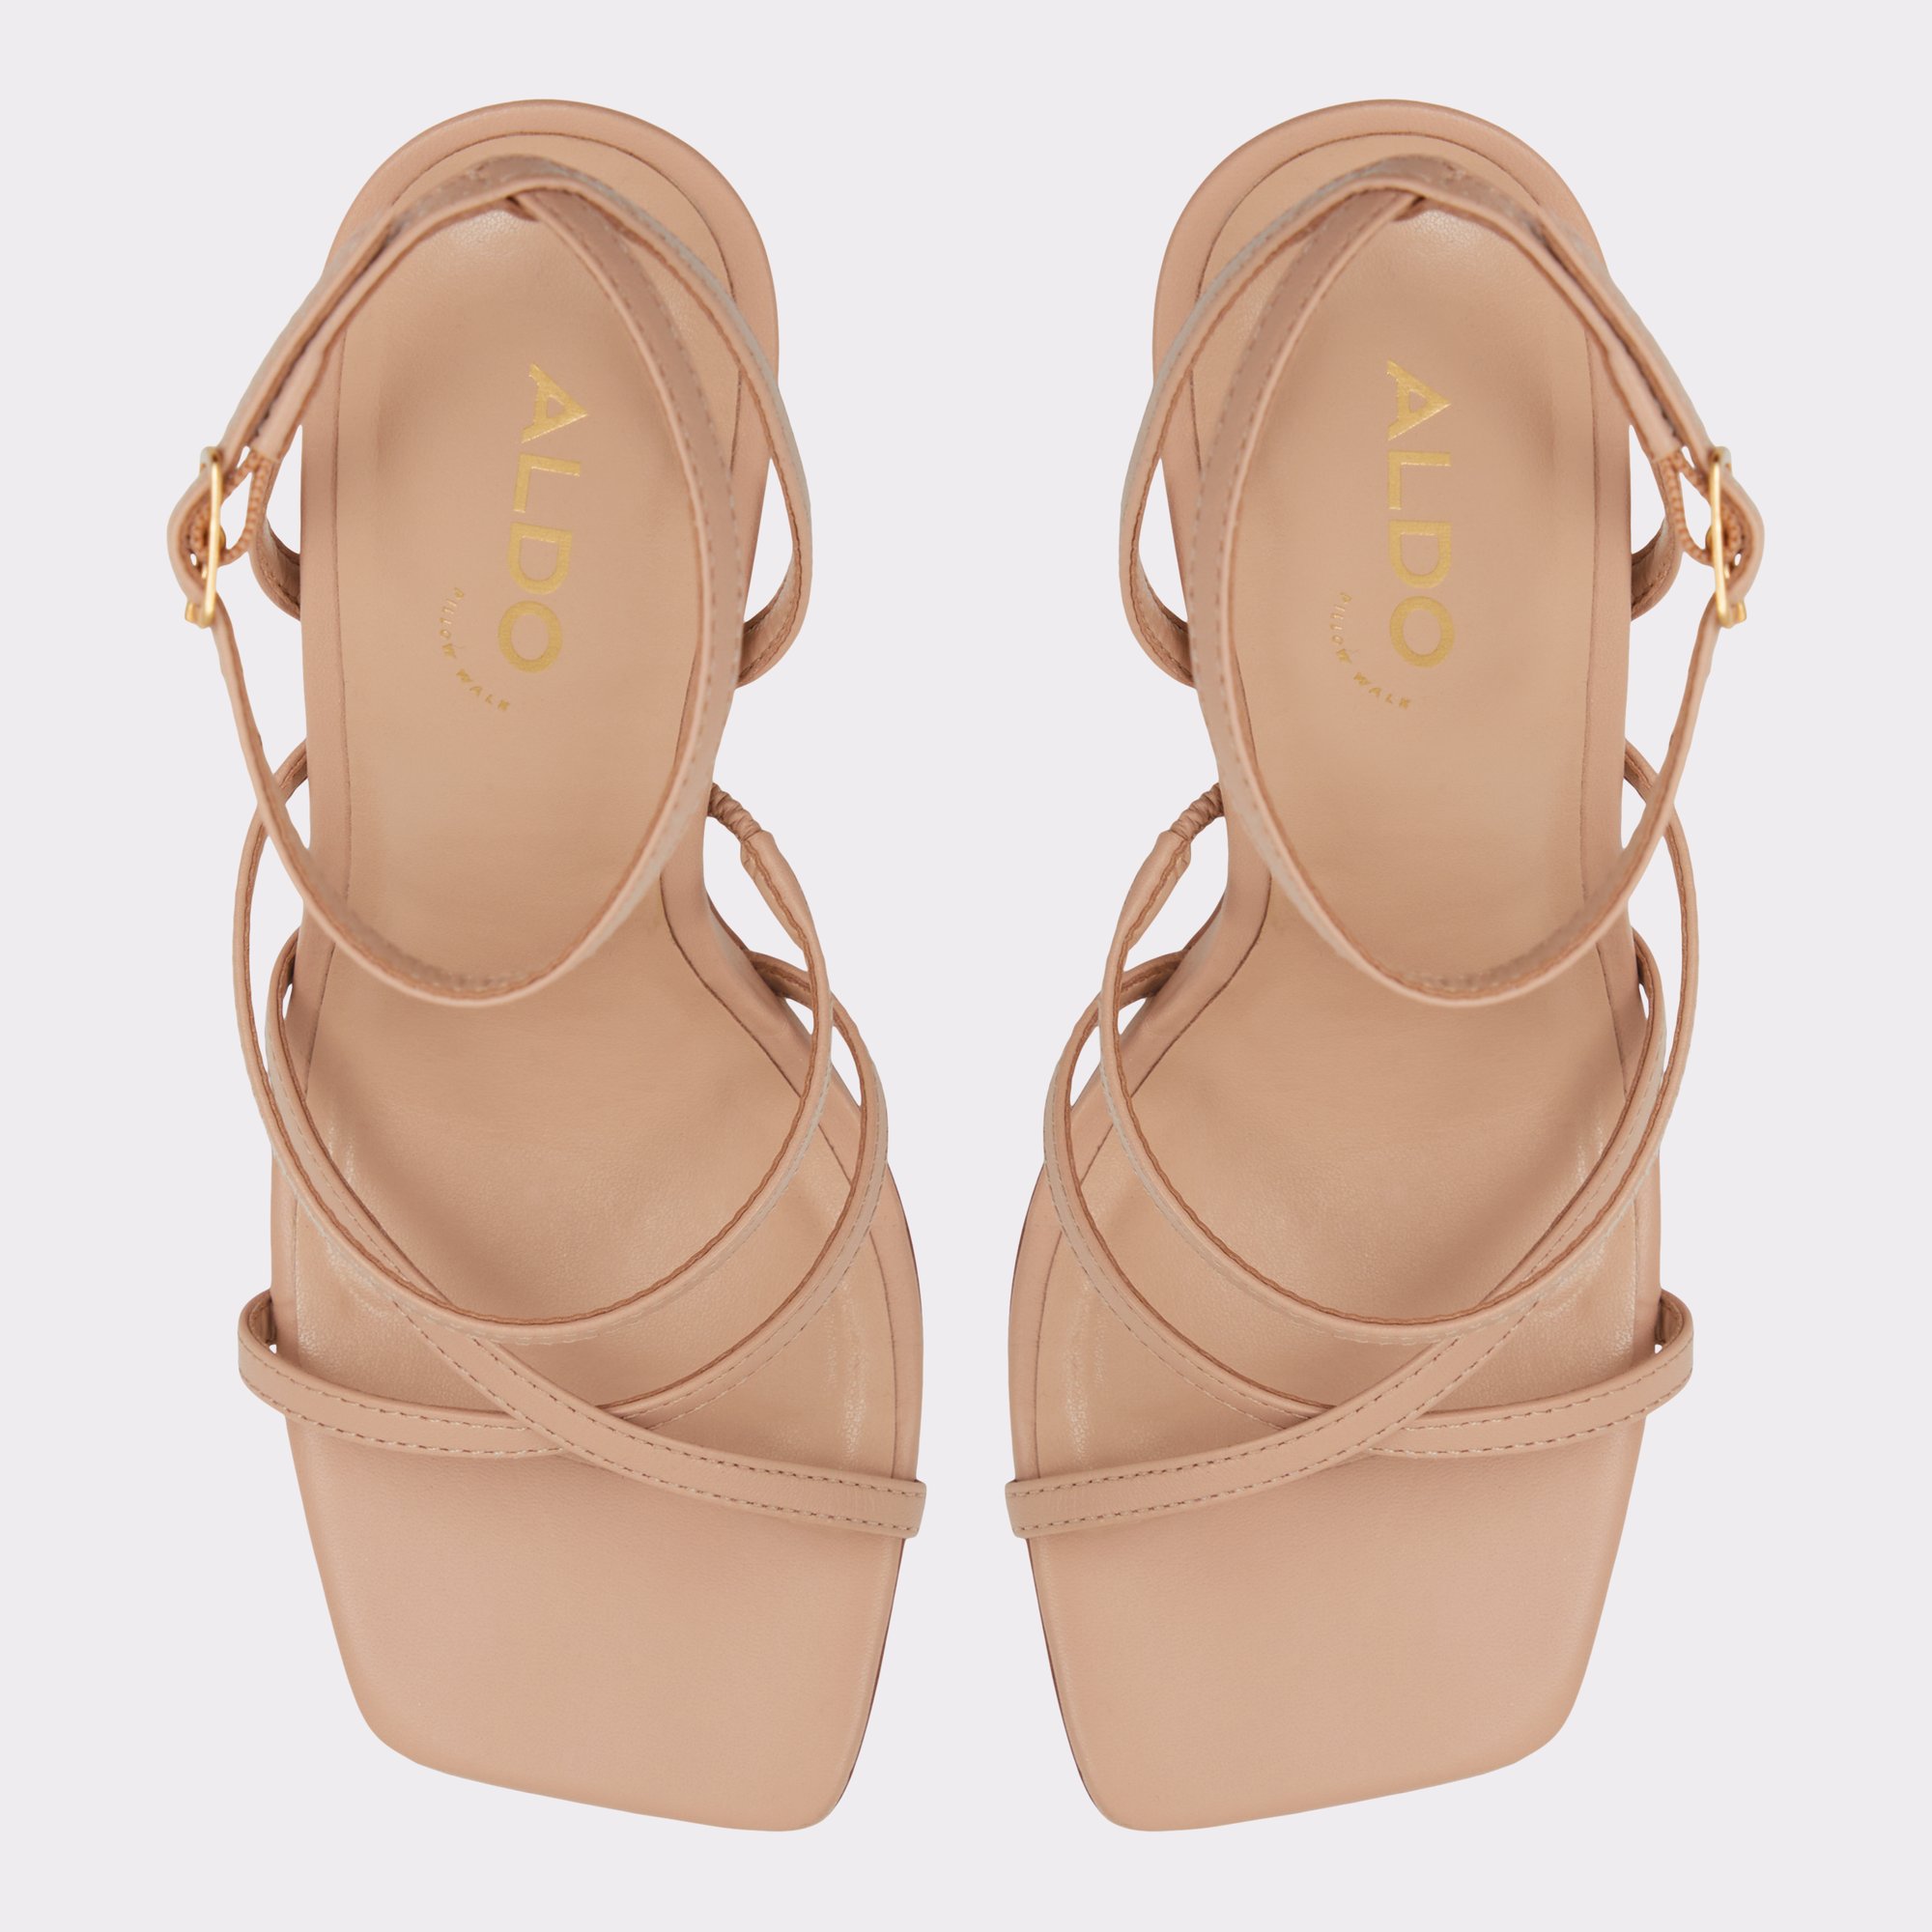 Galoi Bone Women's Strappy sandals | ALDO US